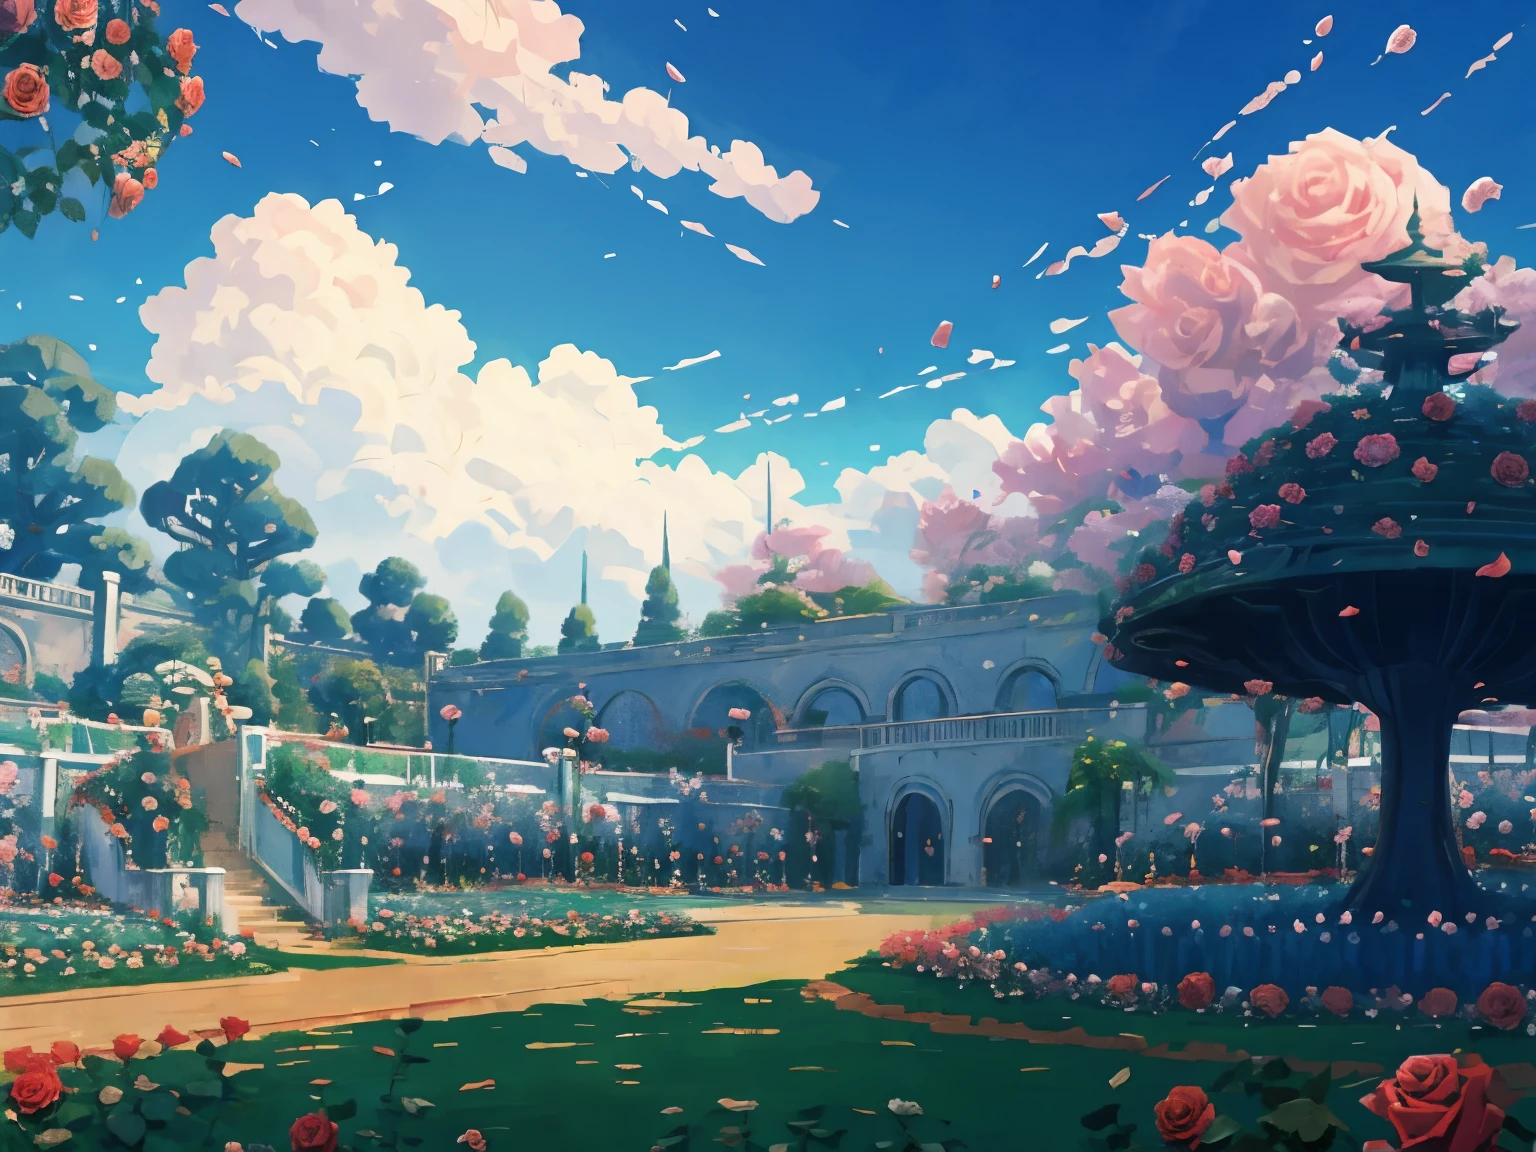 Captura de tela do DVD do filme do Studio Ghibli, (Jardim de rosas bonito:1.4), Nuvens no céu azul, desenhado por Hayao Miyazaki, retro anime, cores brilhantes